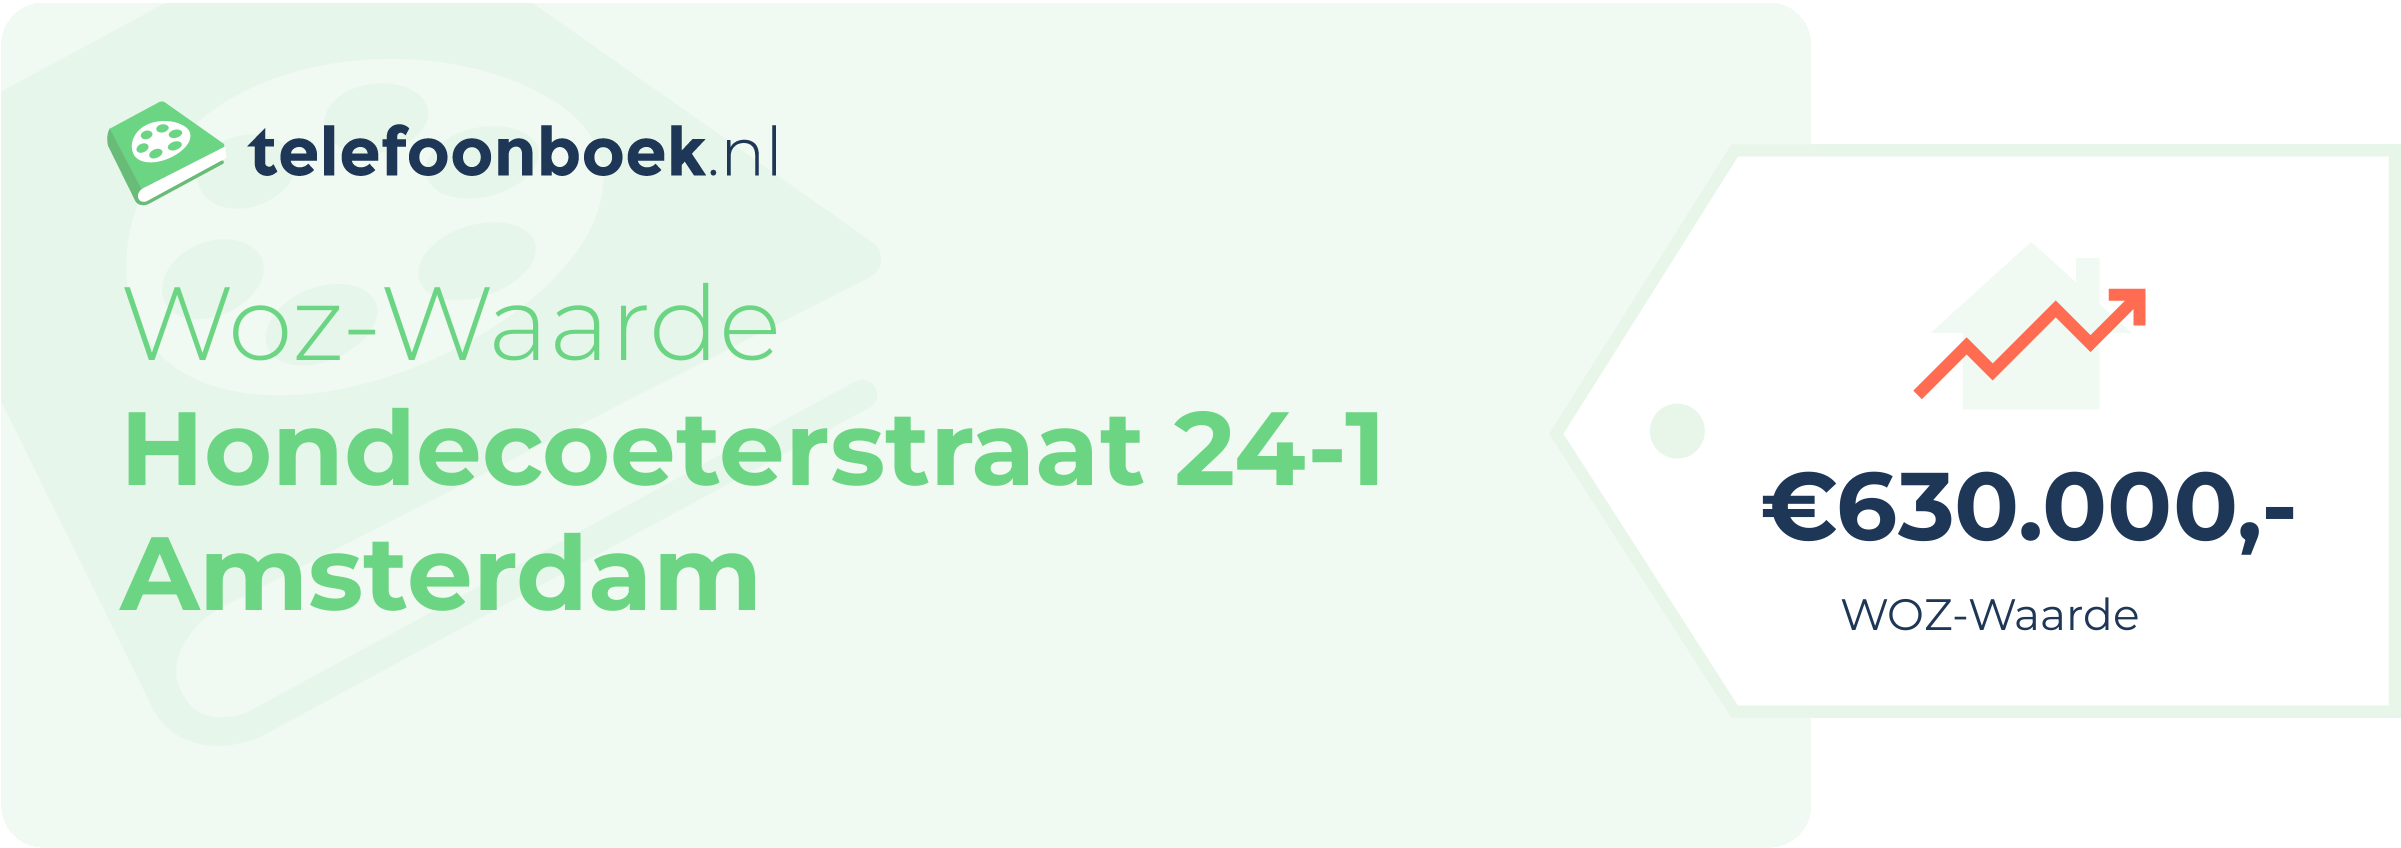 WOZ-waarde Hondecoeterstraat 24-1 Amsterdam